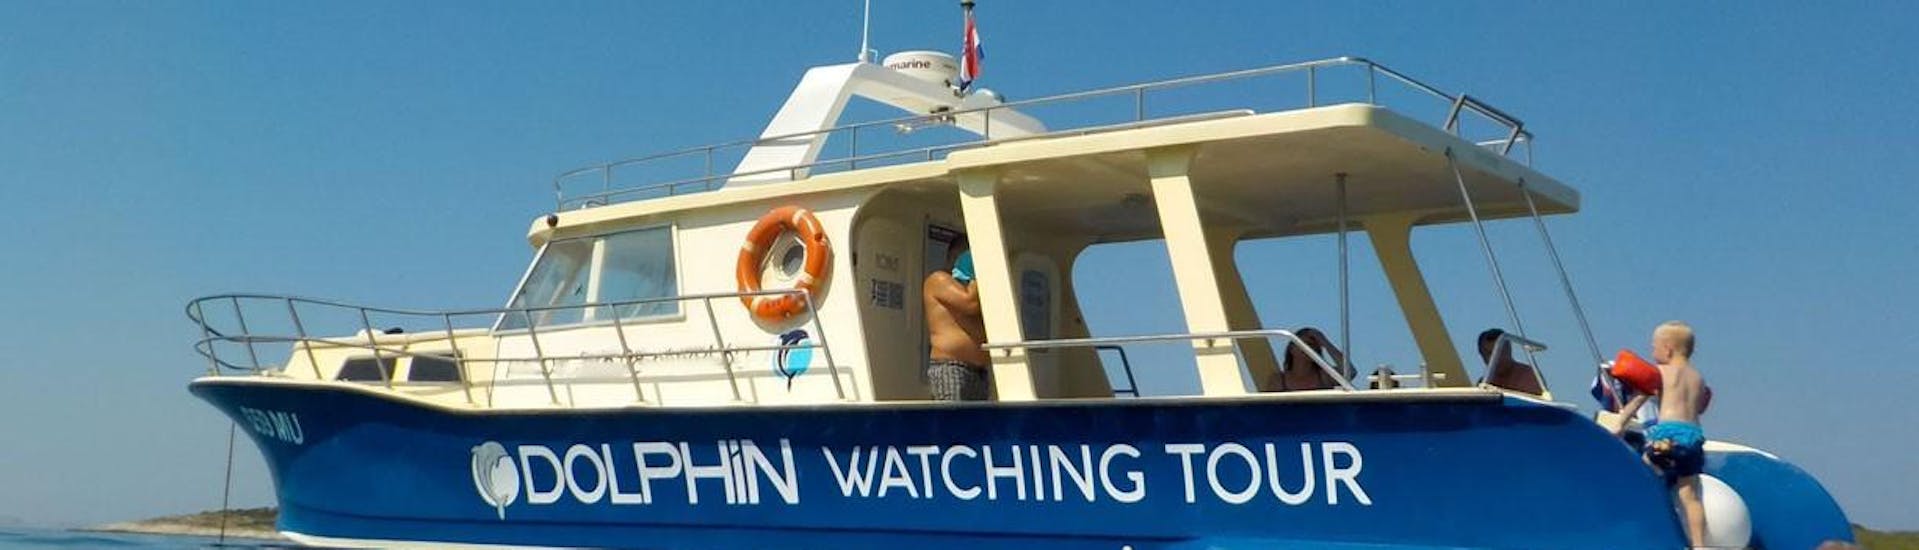 Bateau de Dolphin Watching Murter.